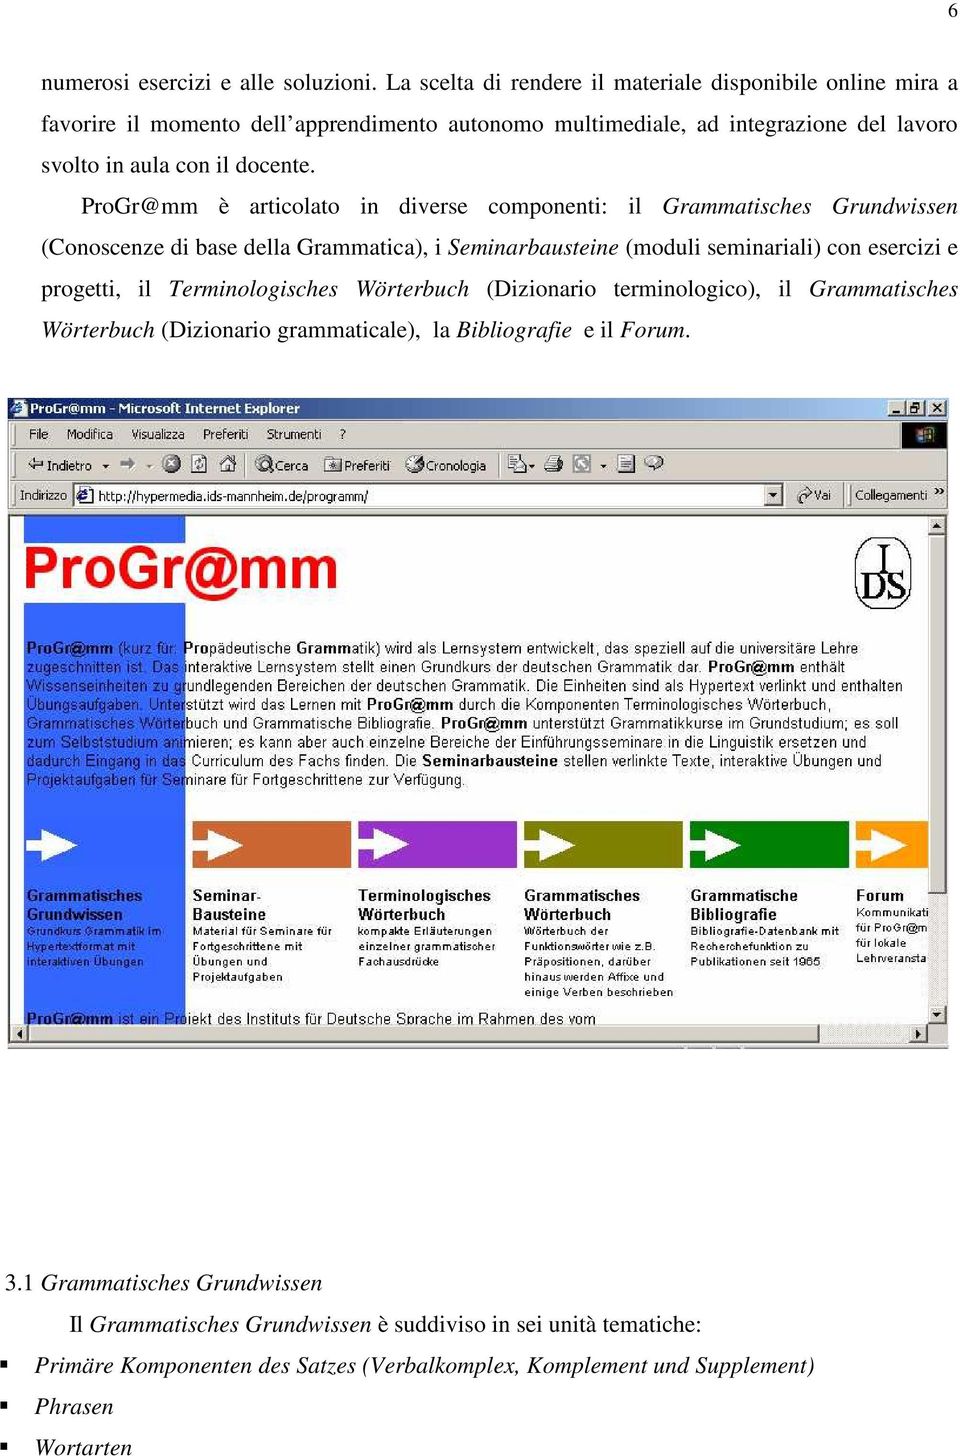 ProGr@mm è articolato in diverse componenti: il Grammatisches Grundwissen (Conoscenze di base della Grammatica), i Seminarbausteine (moduli seminariali) con esercizi e progetti, il